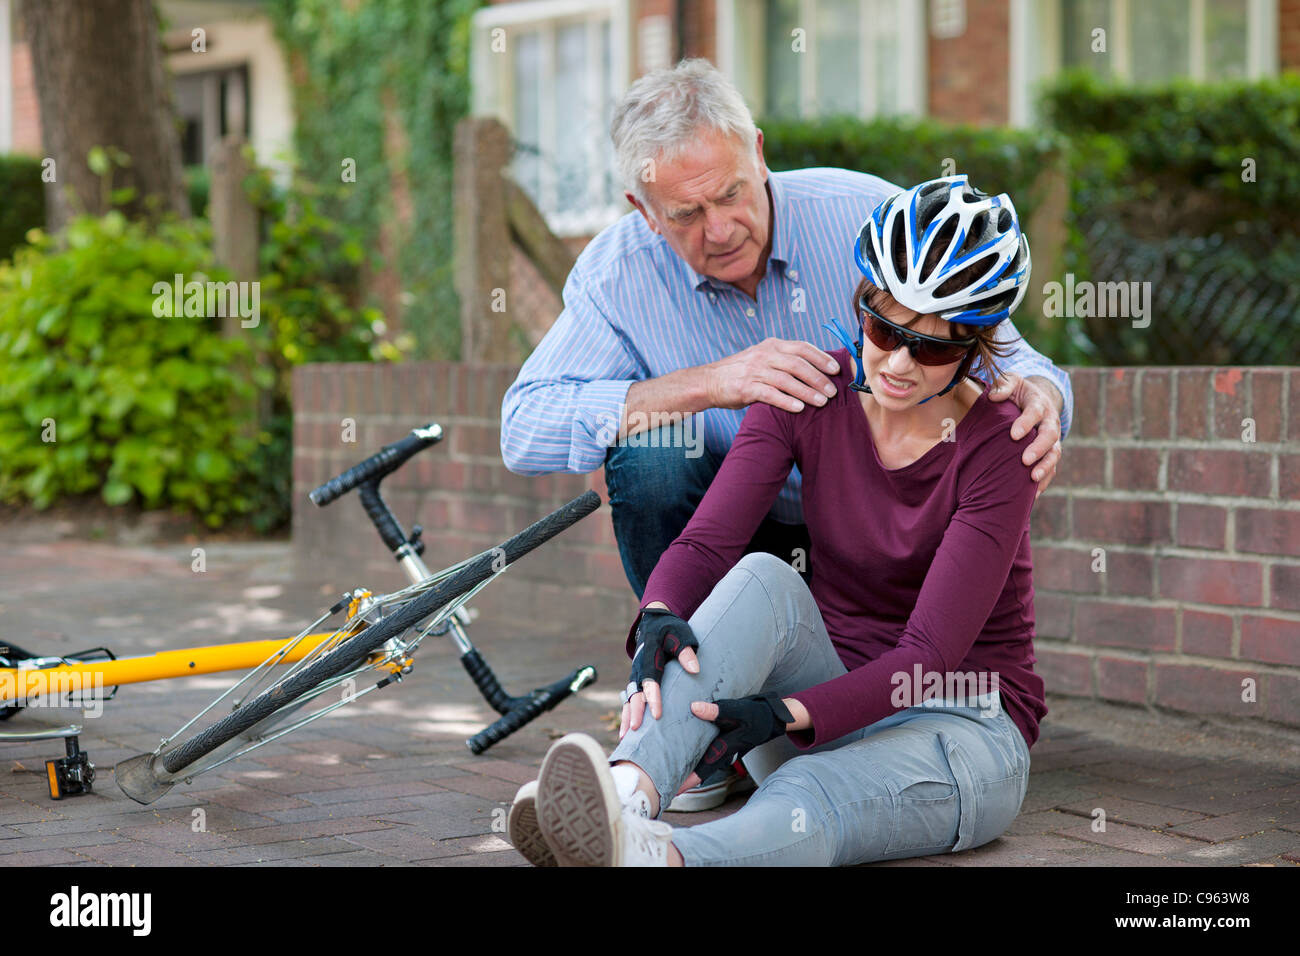 Fahrradunfall. Menschen helfen, einen Radfahrer, der vom Fahrrad gefallen ist. Stockfoto